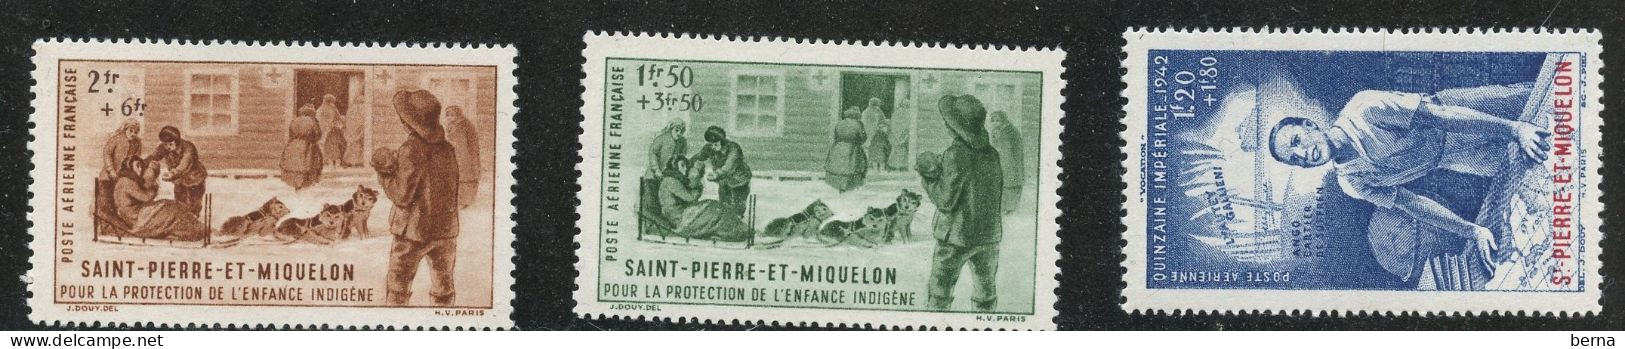 SAINT PIERRE ET MIQUELON POSTE AERIENNE 1/3 LUXE NEUF SANS CHARNIERE - Unused Stamps